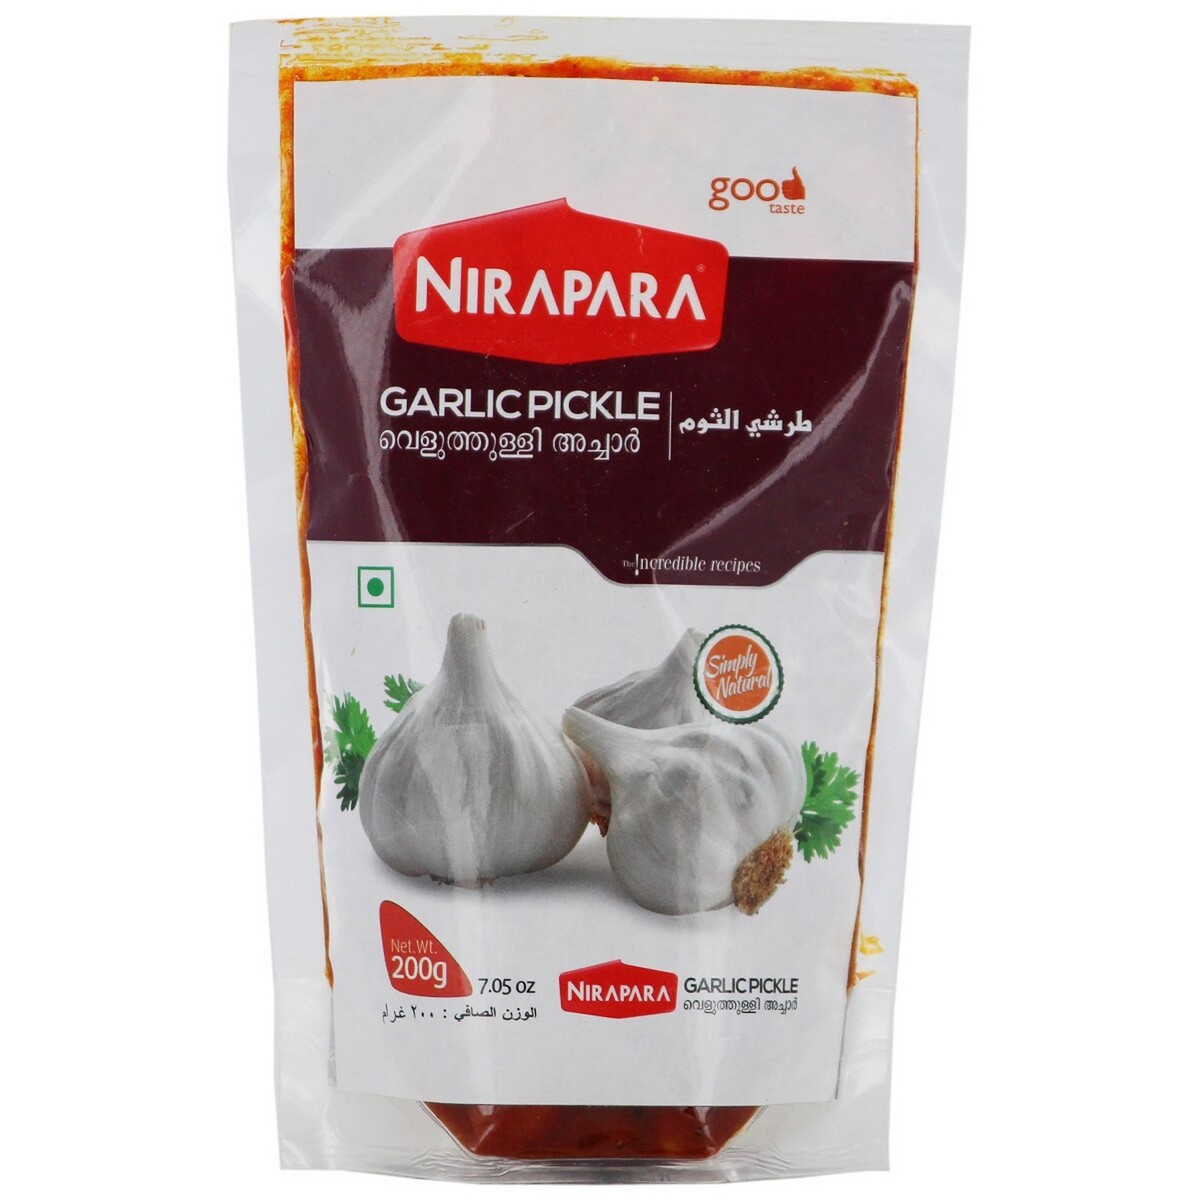 Nirapara Garlic Pickle 200g